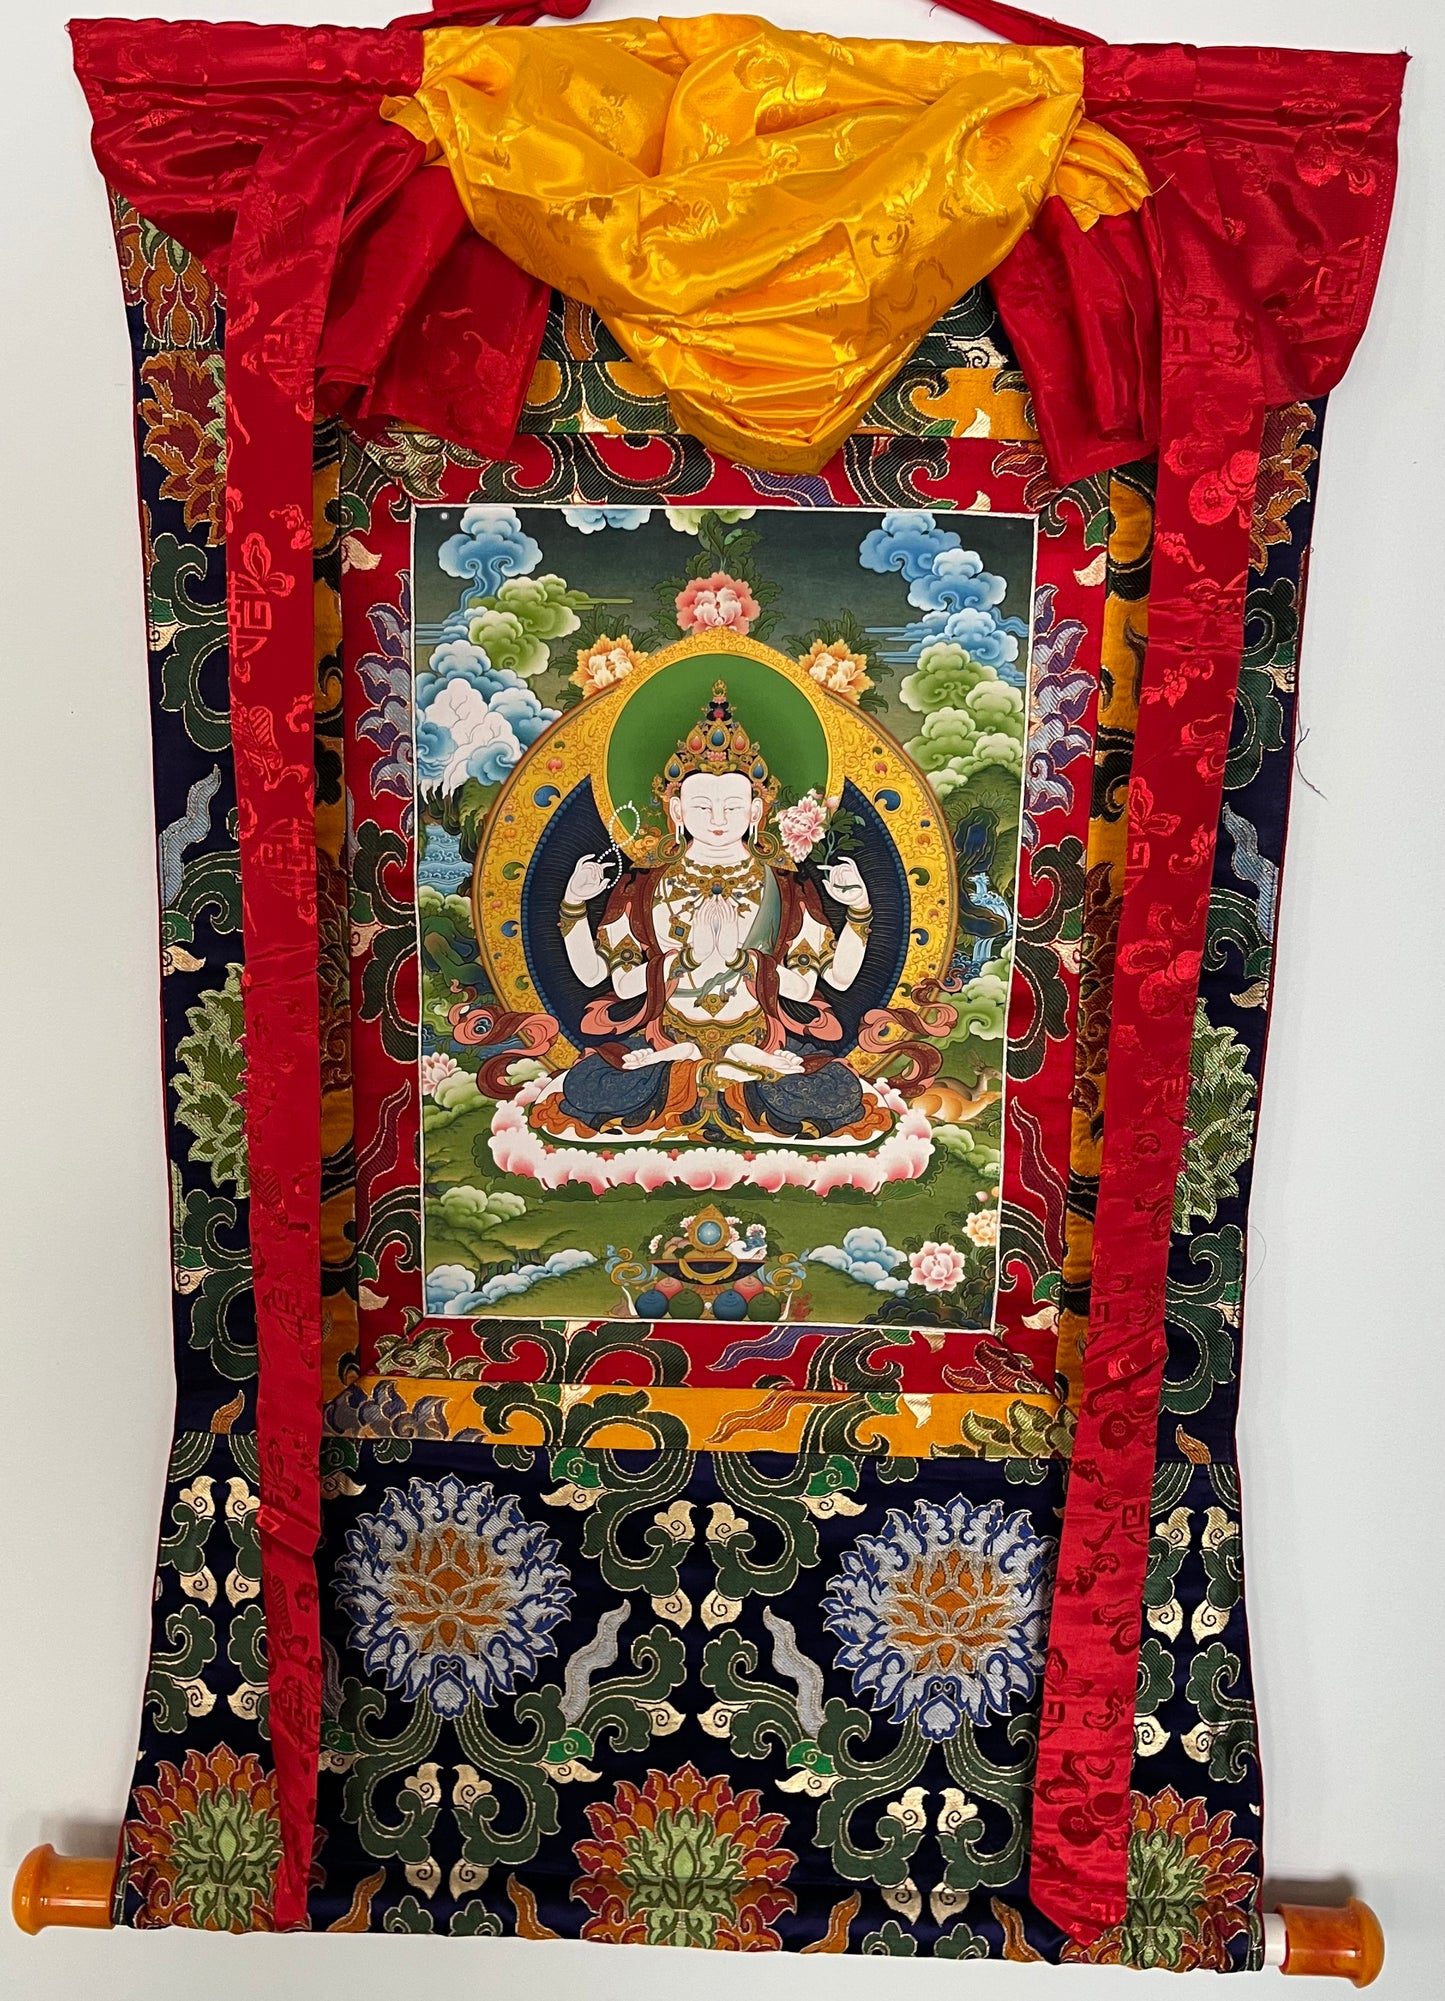 Four Armed Avalokiteshvara Art Print Thangka